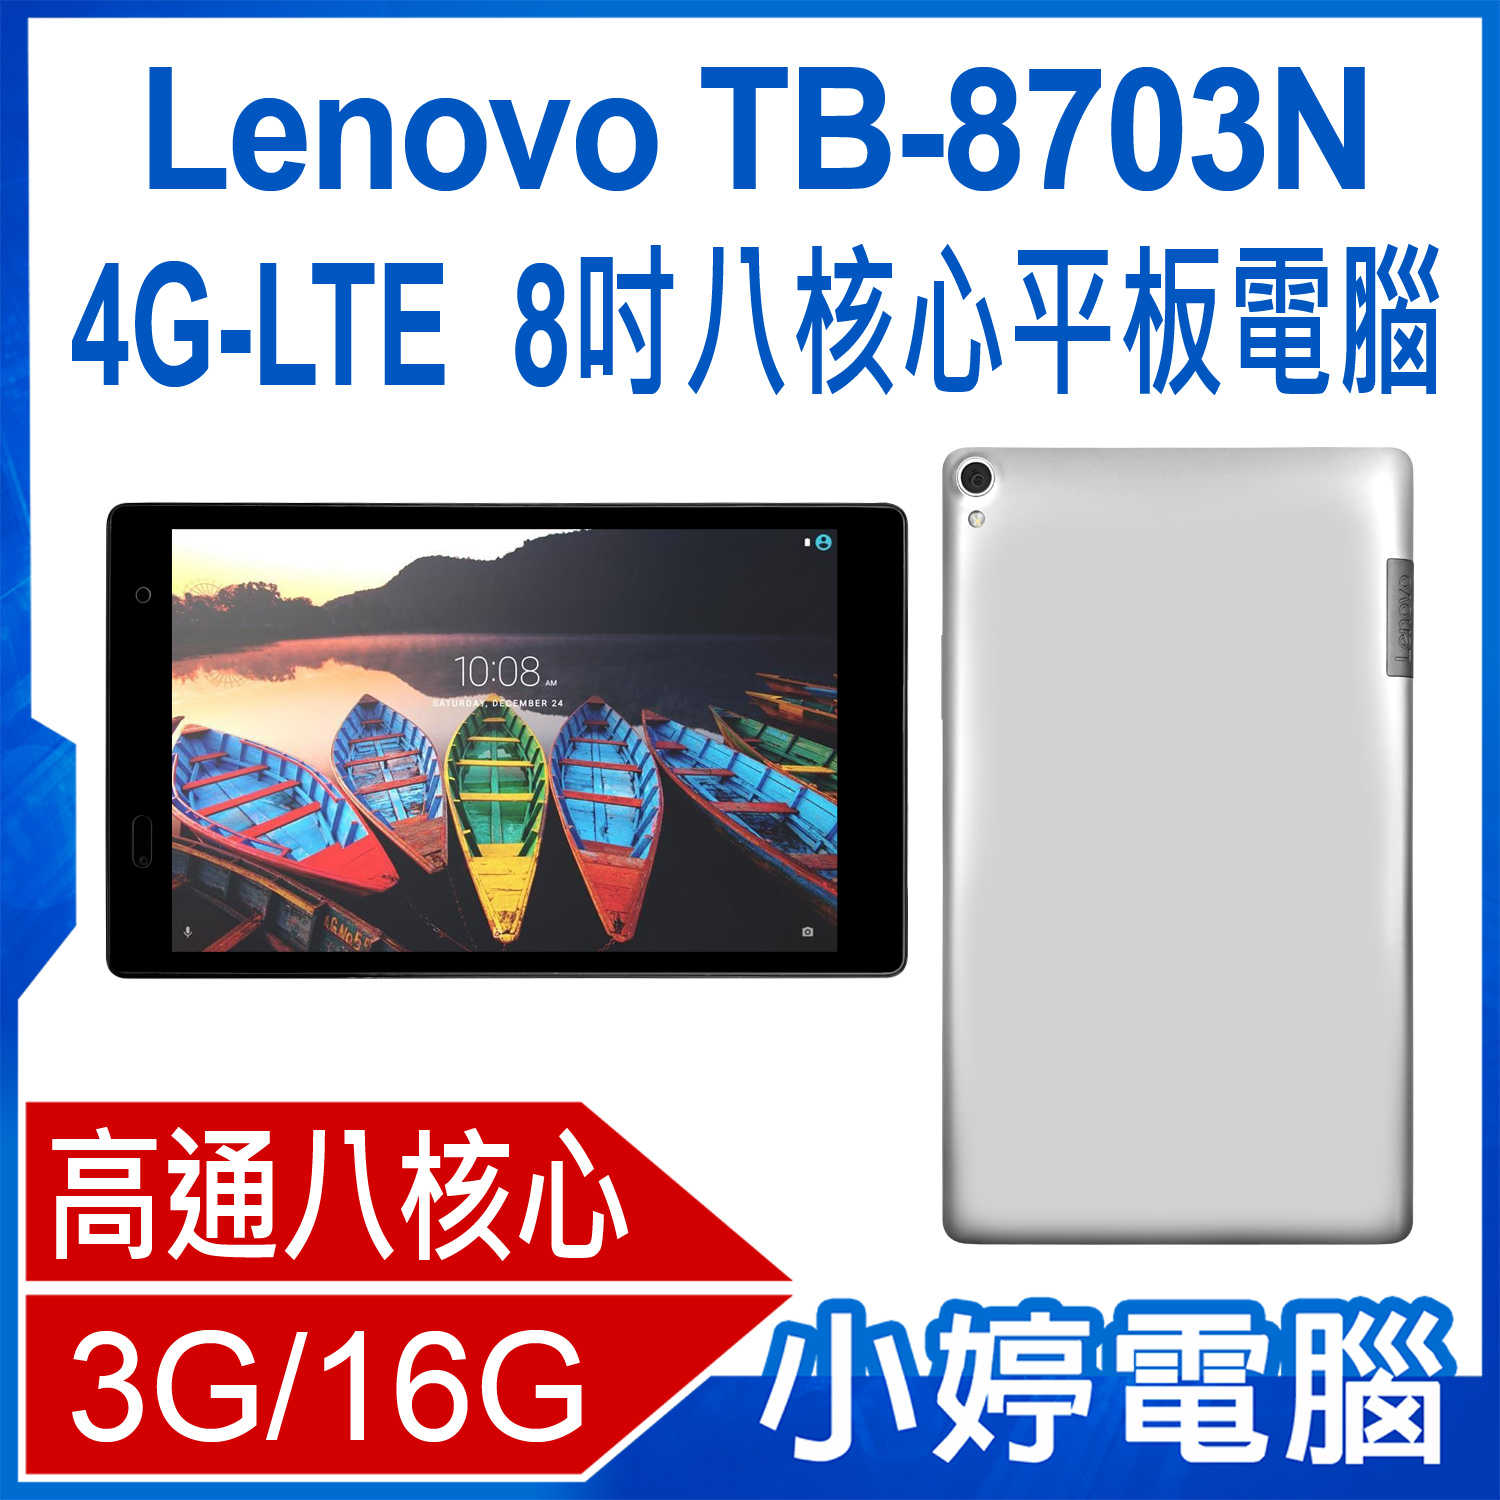 【小婷電腦】福利品 Lenovo TB-8703N 4G-LTE 8吋八核心平板電腦 3G/16G IPS面板